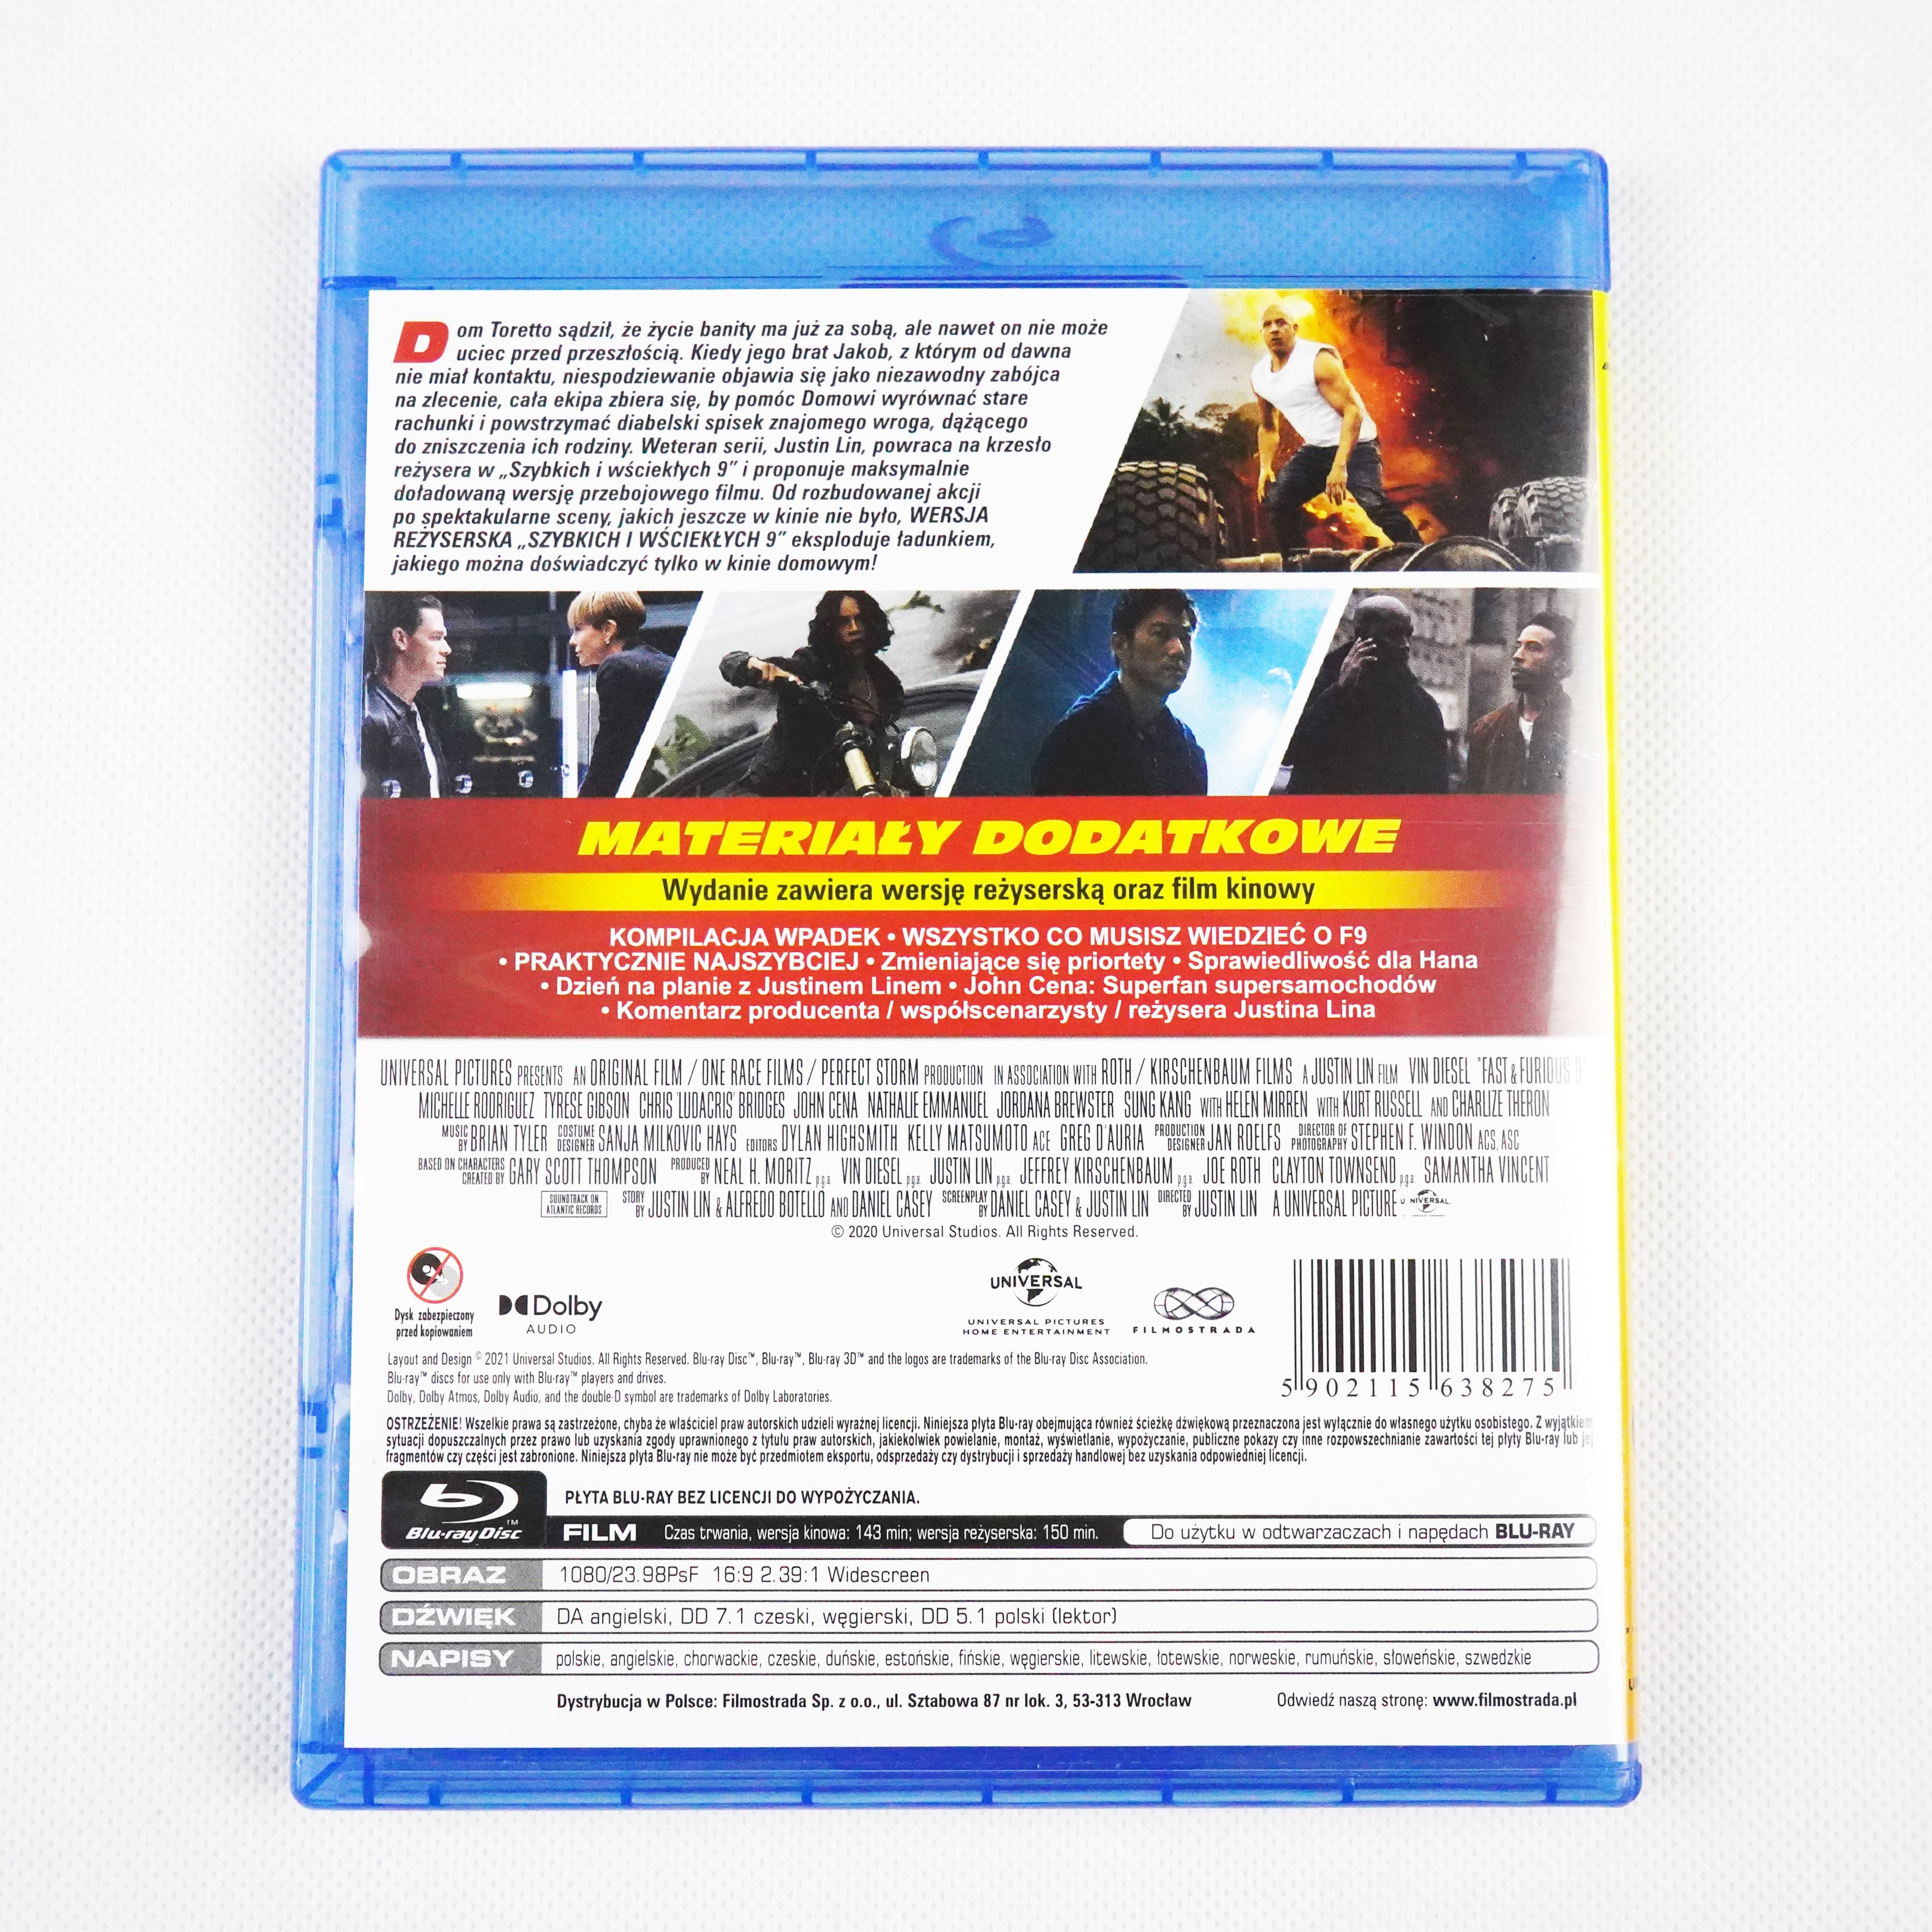 szybcy i wsciekli 9 wydanie Blu-ray okladka tył